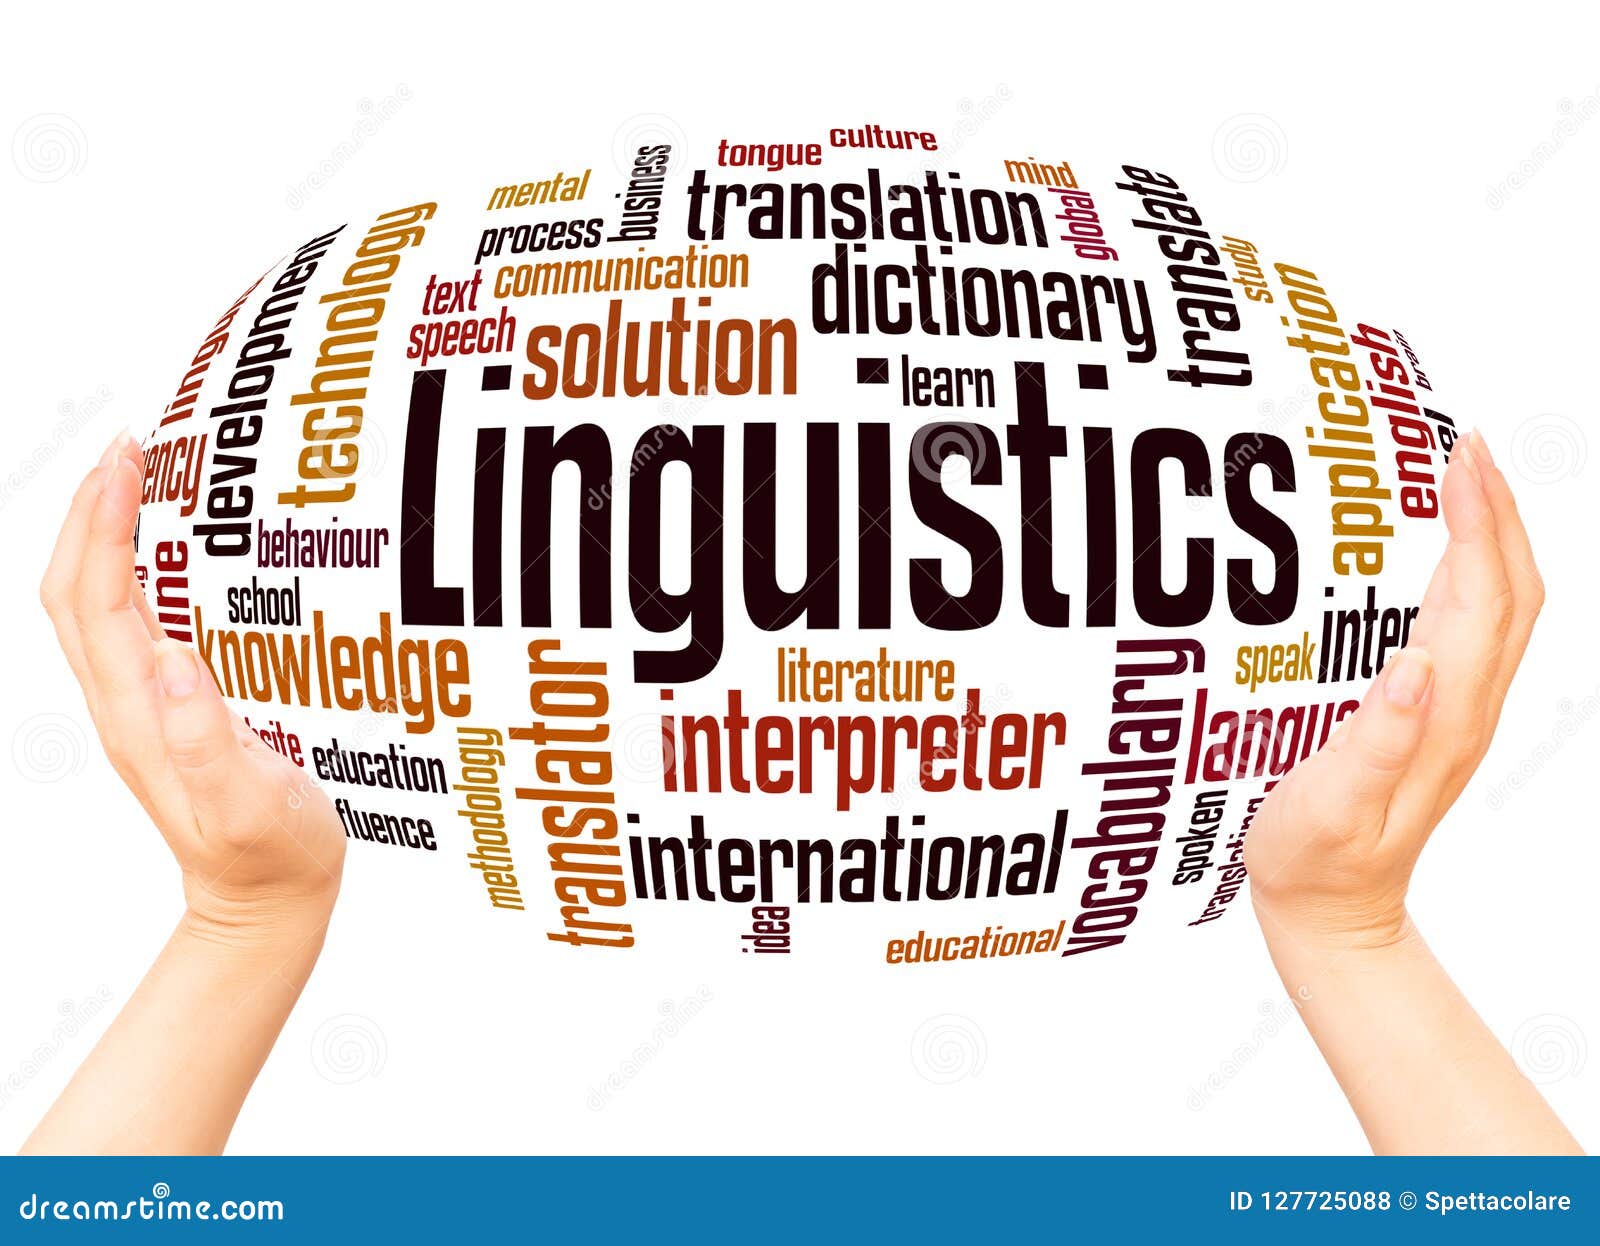 linguistics word cloud hand sphere concept